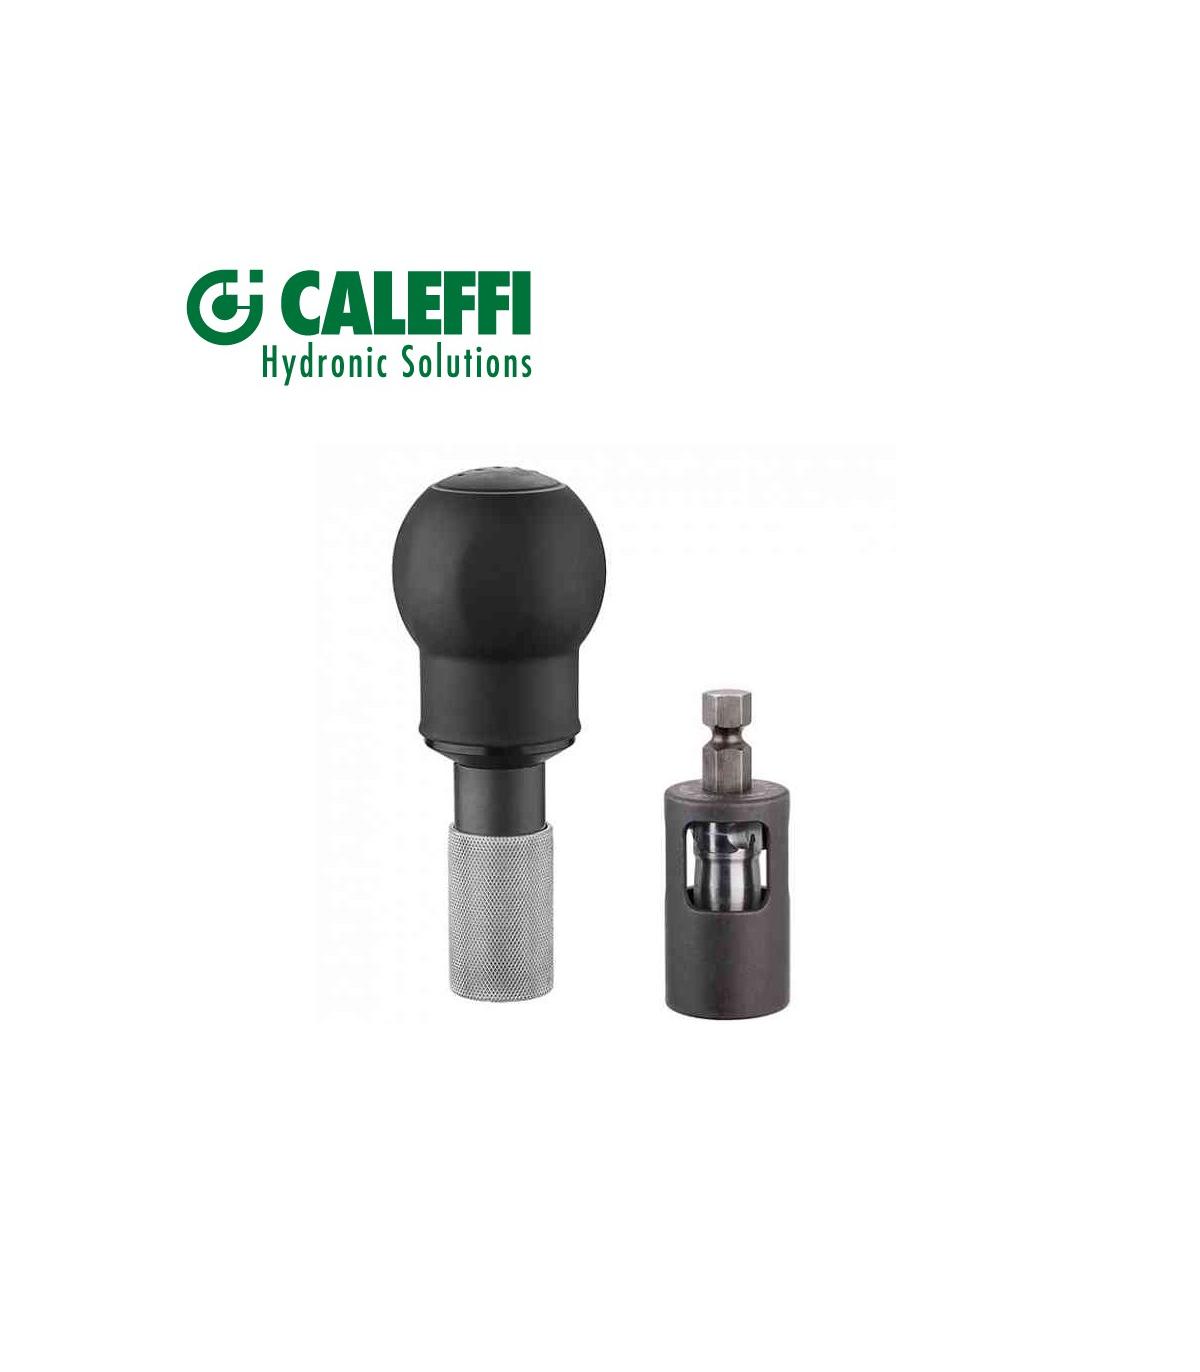 Calibreur pour tuyaux multicouche et Poignee Caleffi 679